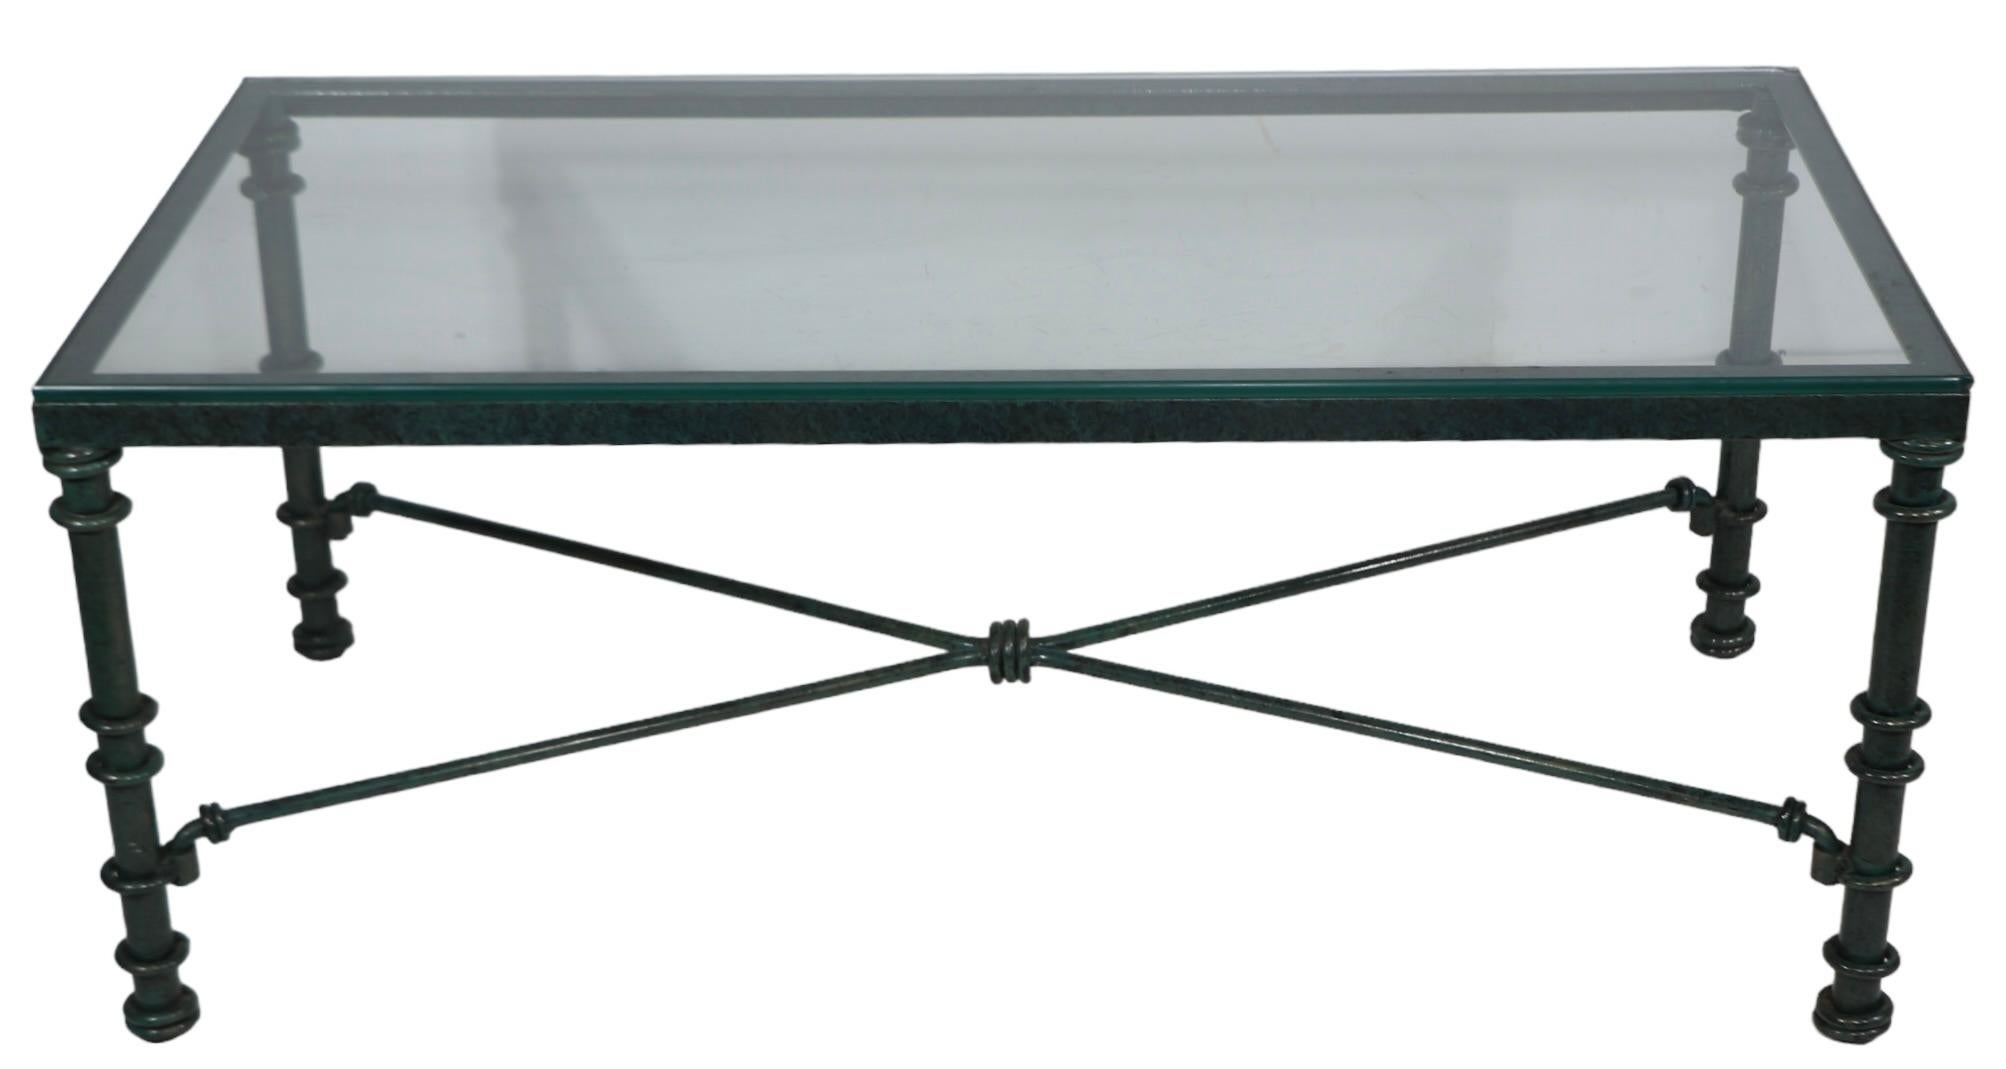 Voguish Brutalist coffee table in rich faux Verdigris paint finish, made in USA c 1970-1980's. La table est dotée d'une base en métal en  finition originale vert foncé et noir, avec un plateau en verre. La peinture est en excellent état de propreté